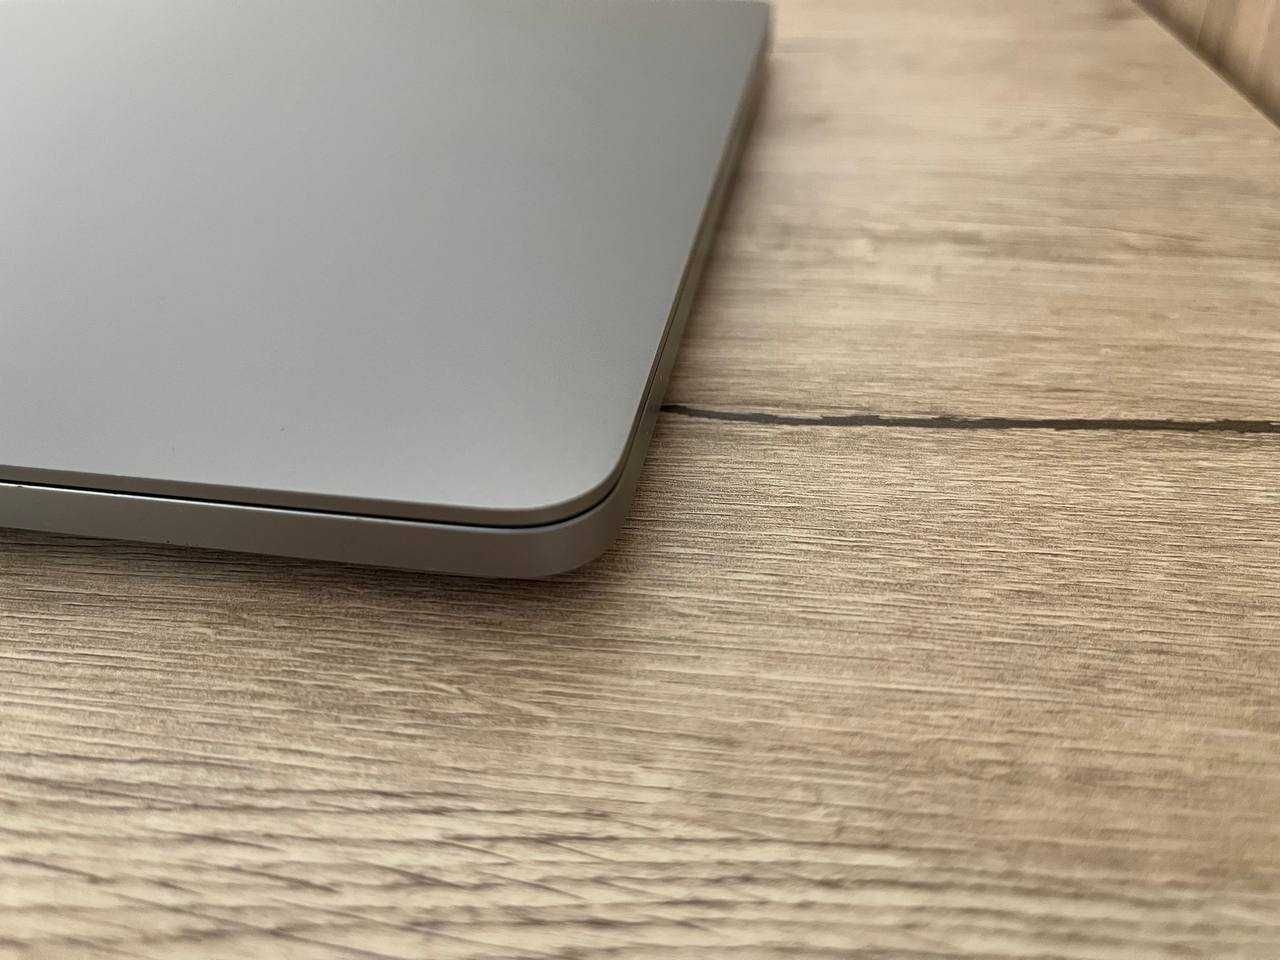 MacBook Pro 16 2019 (MVVJ2LL/A)